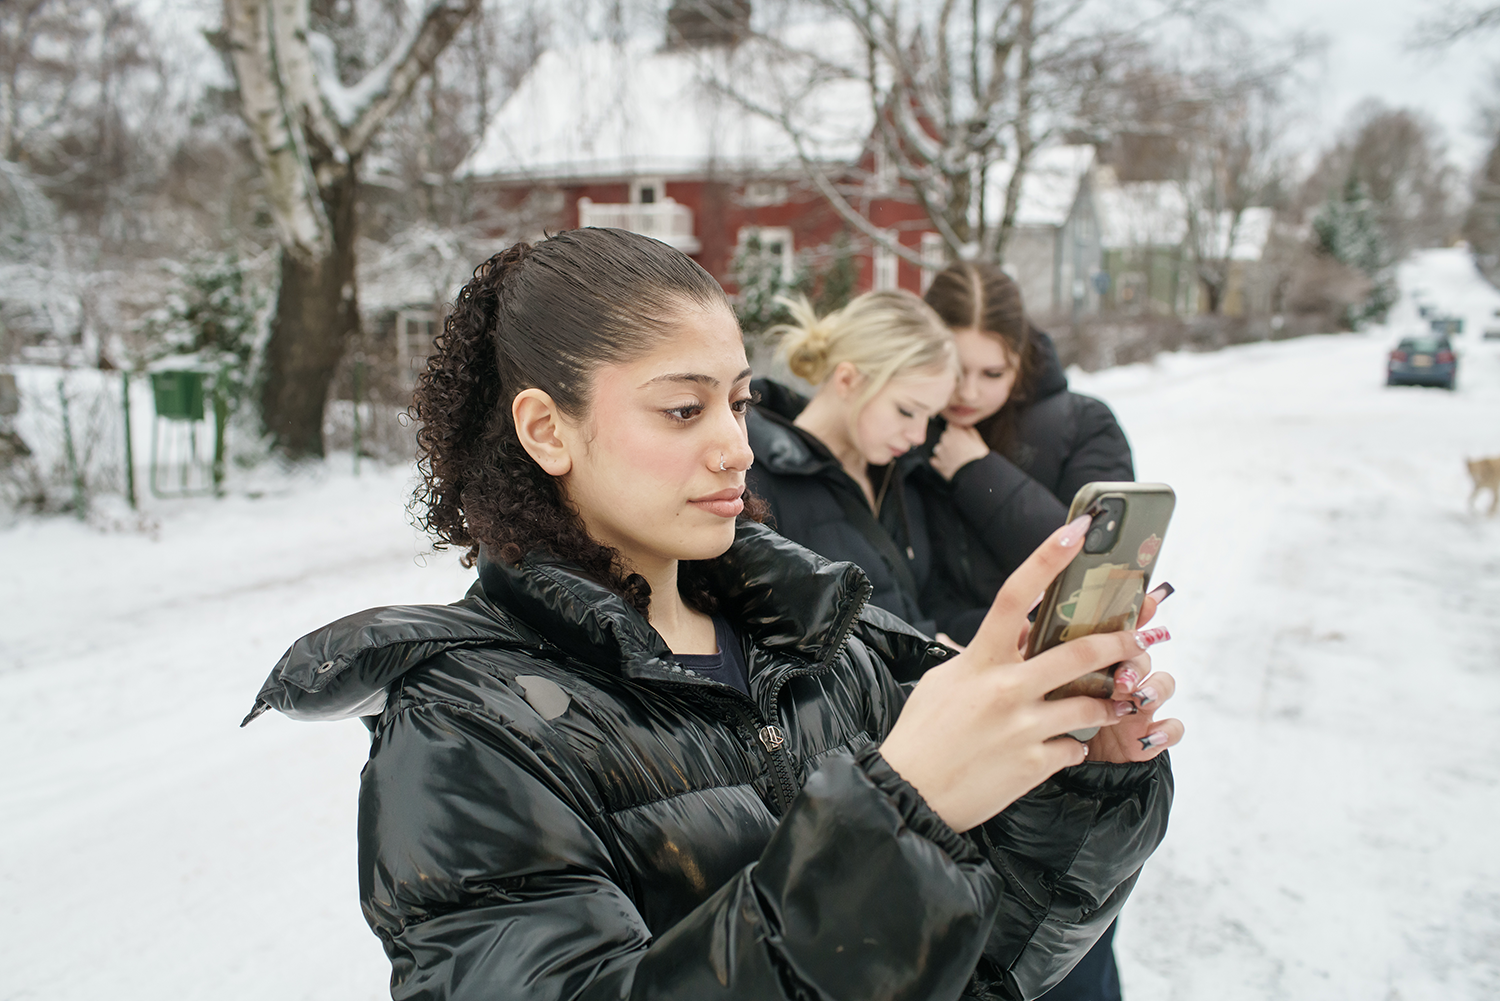 Kolme nuorta katsoo puhelimiaan talvisäässä.